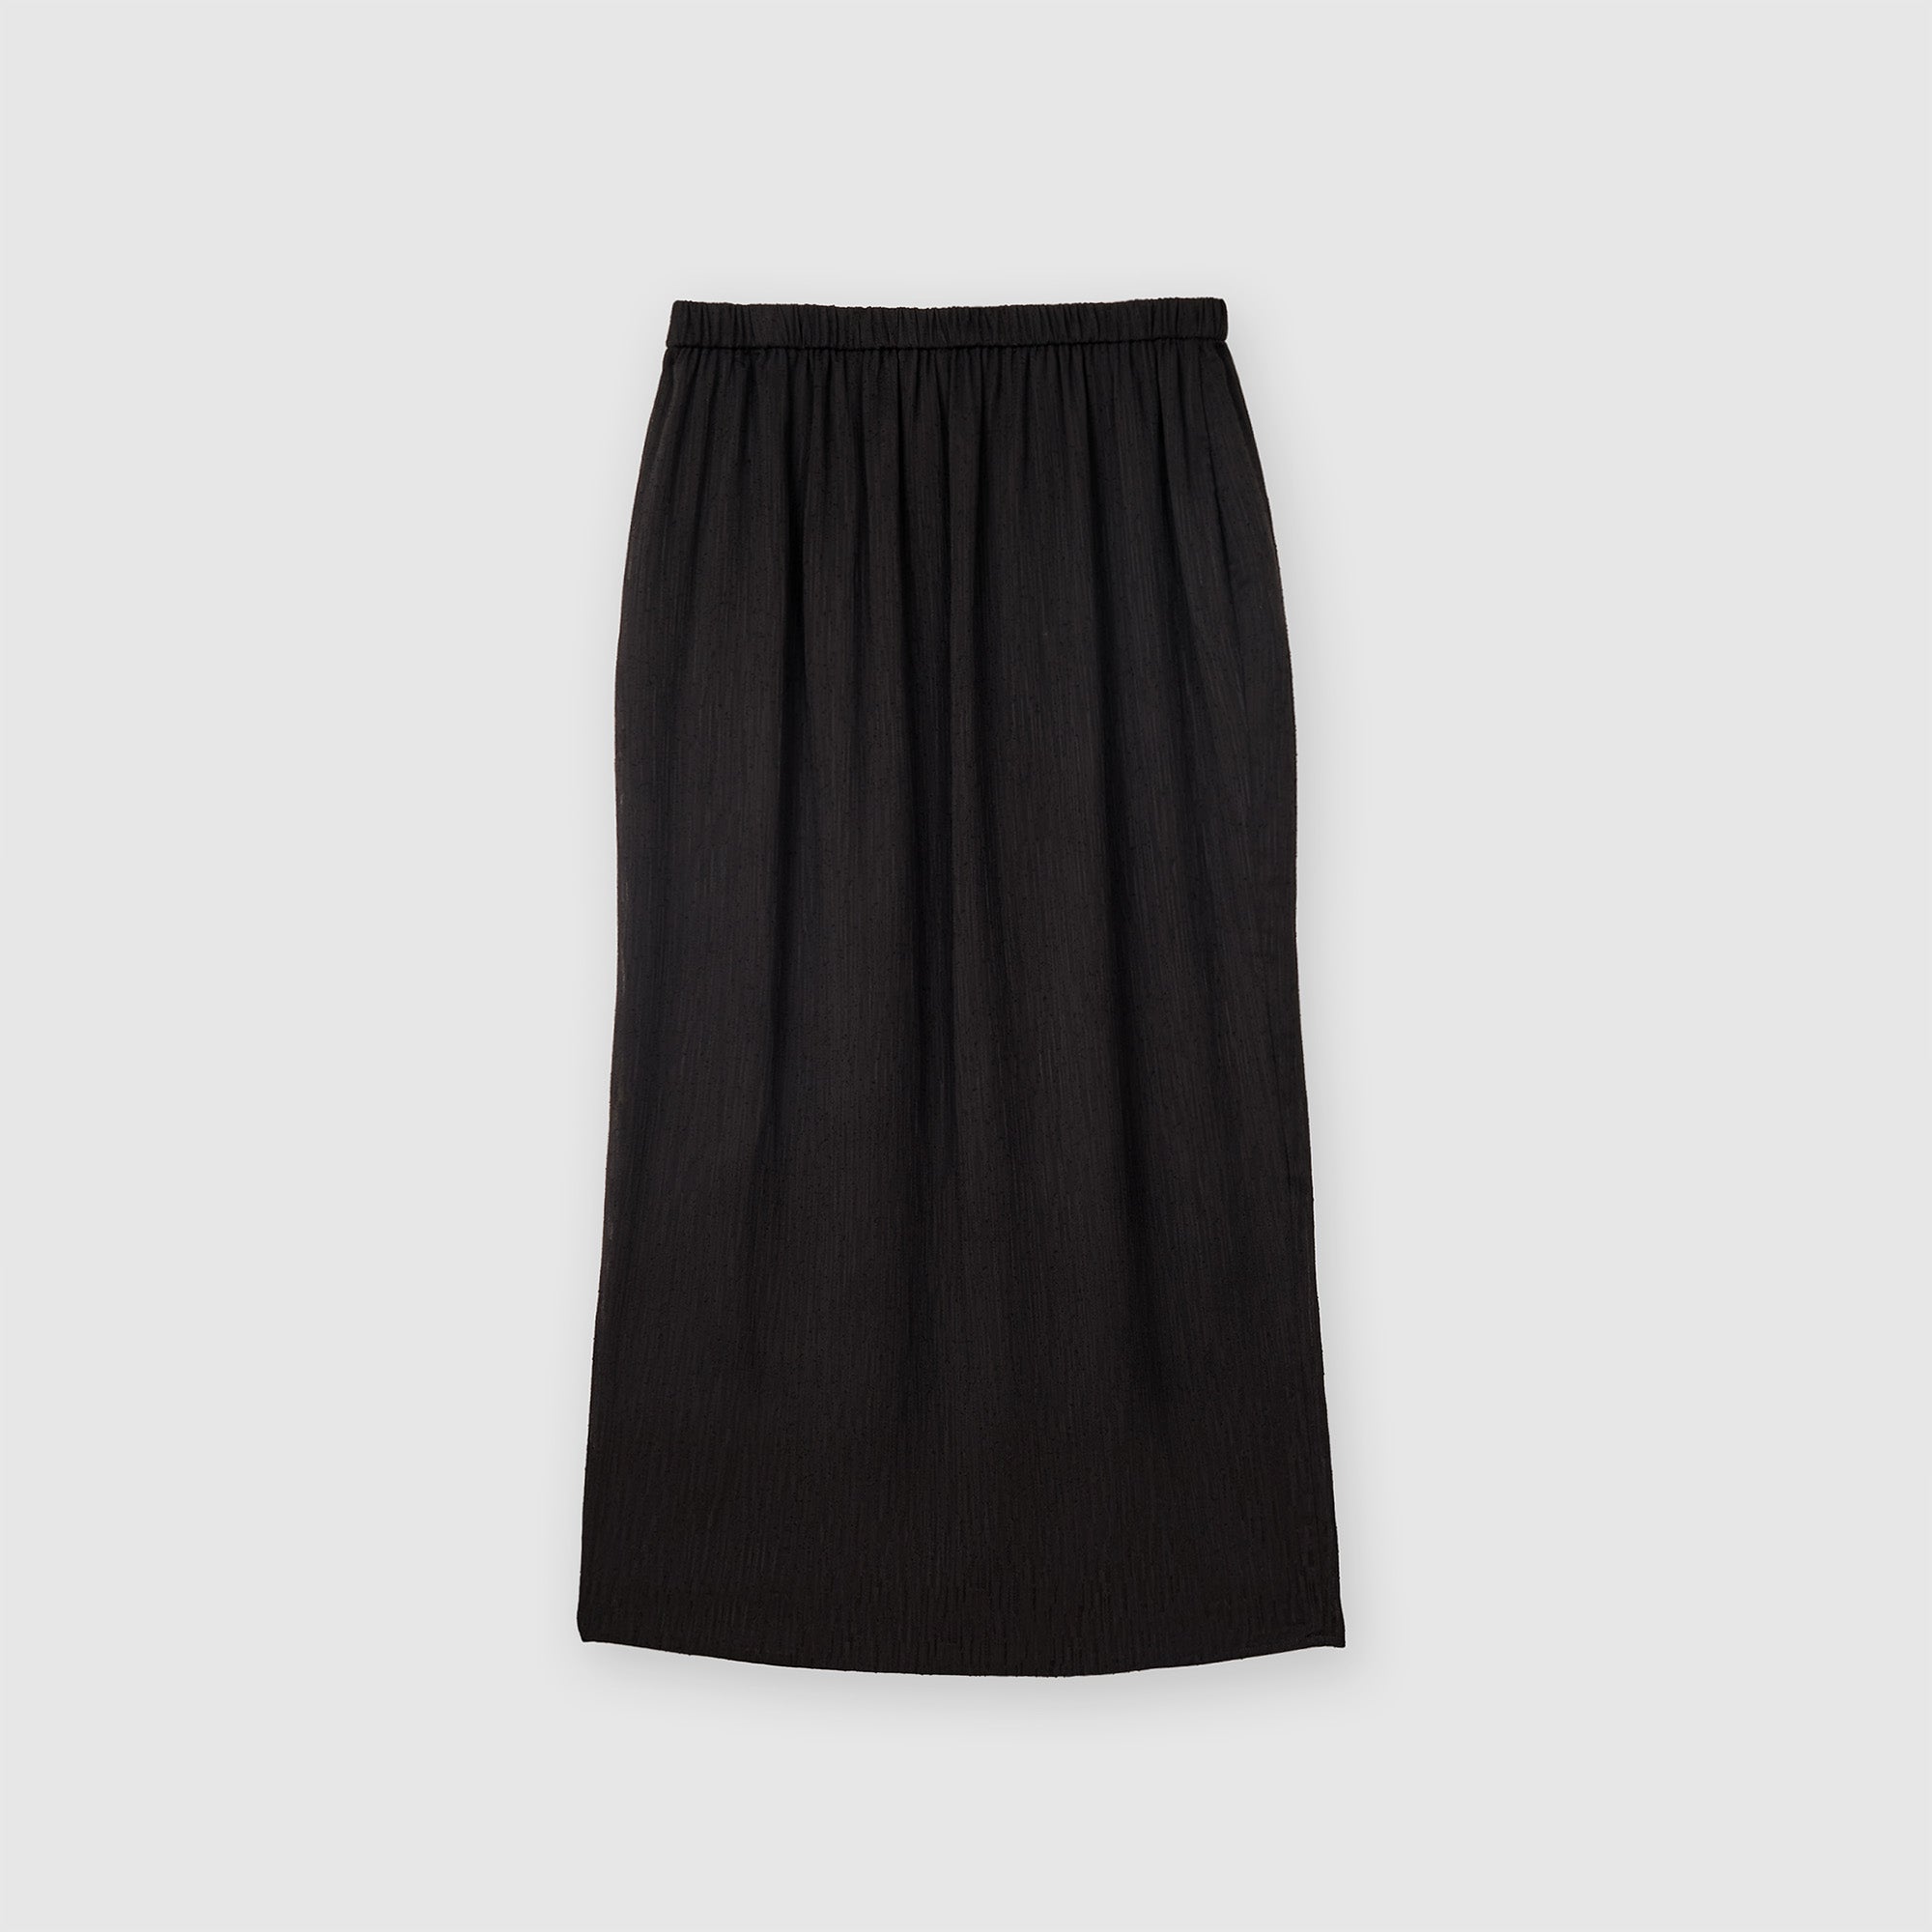 Textured Overlap Skirt